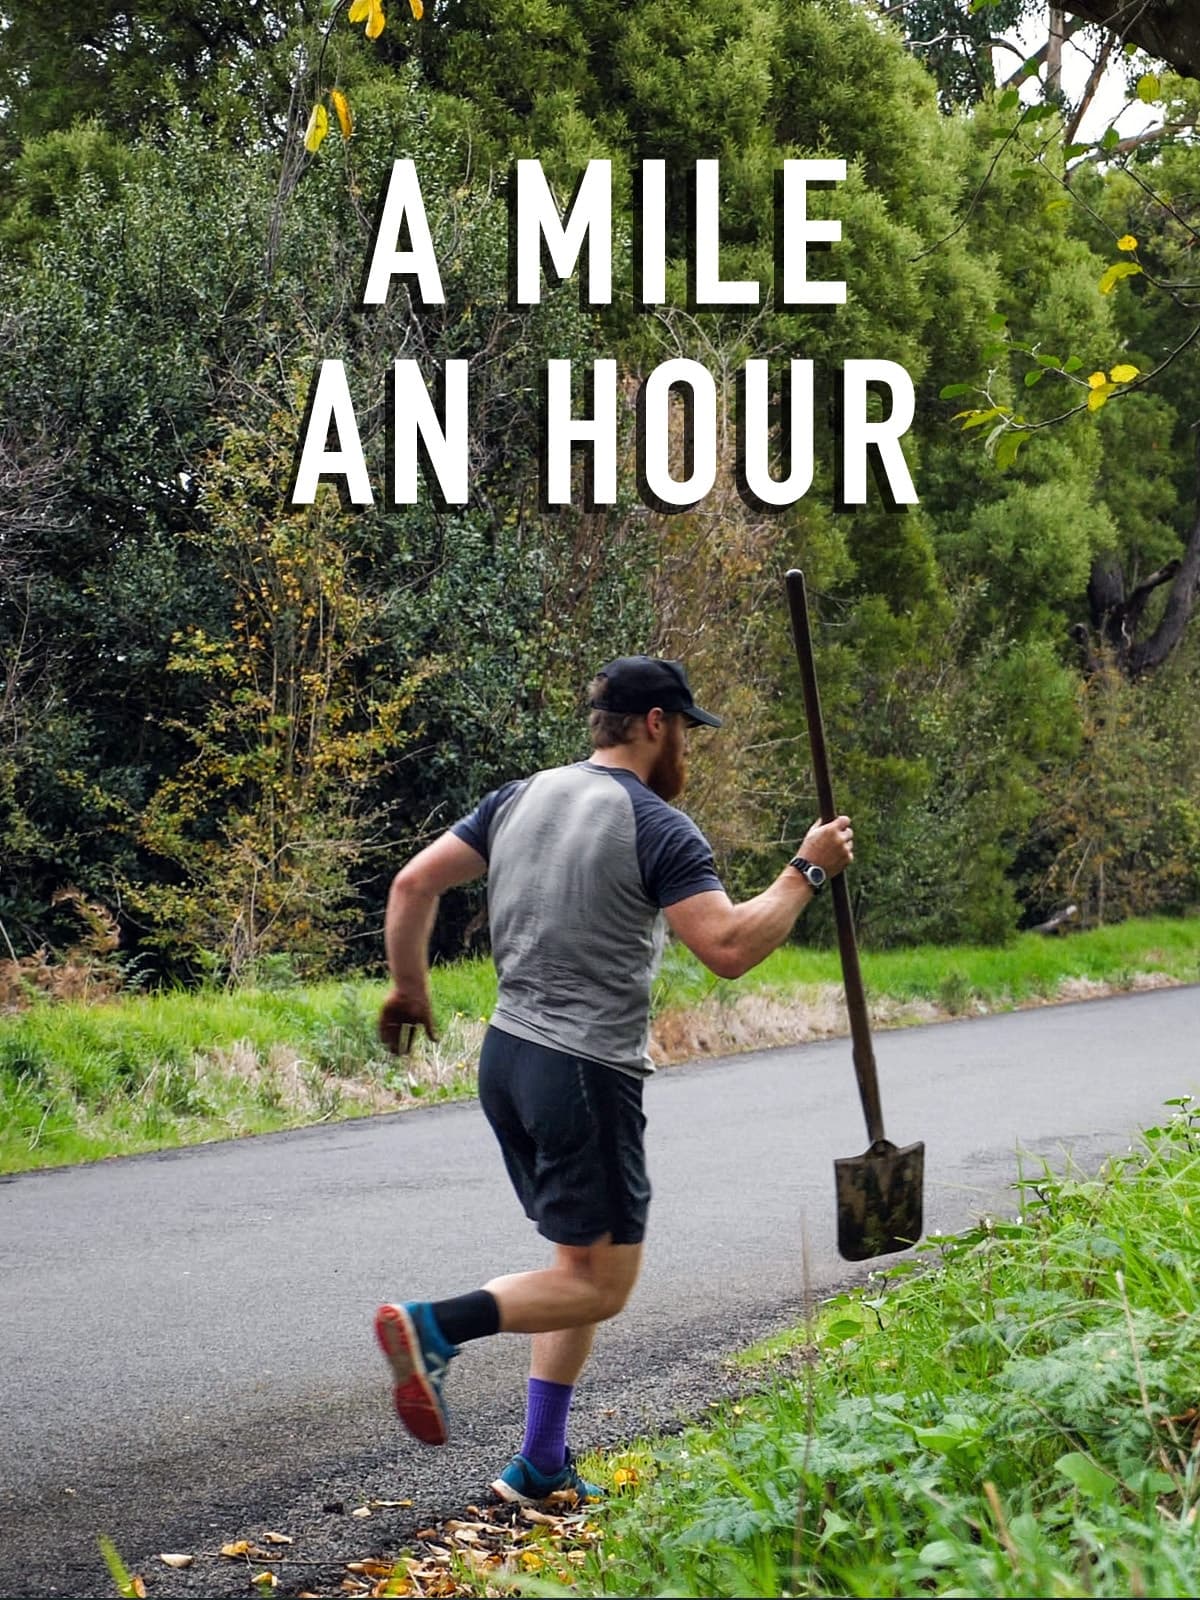 A Mile an Hour